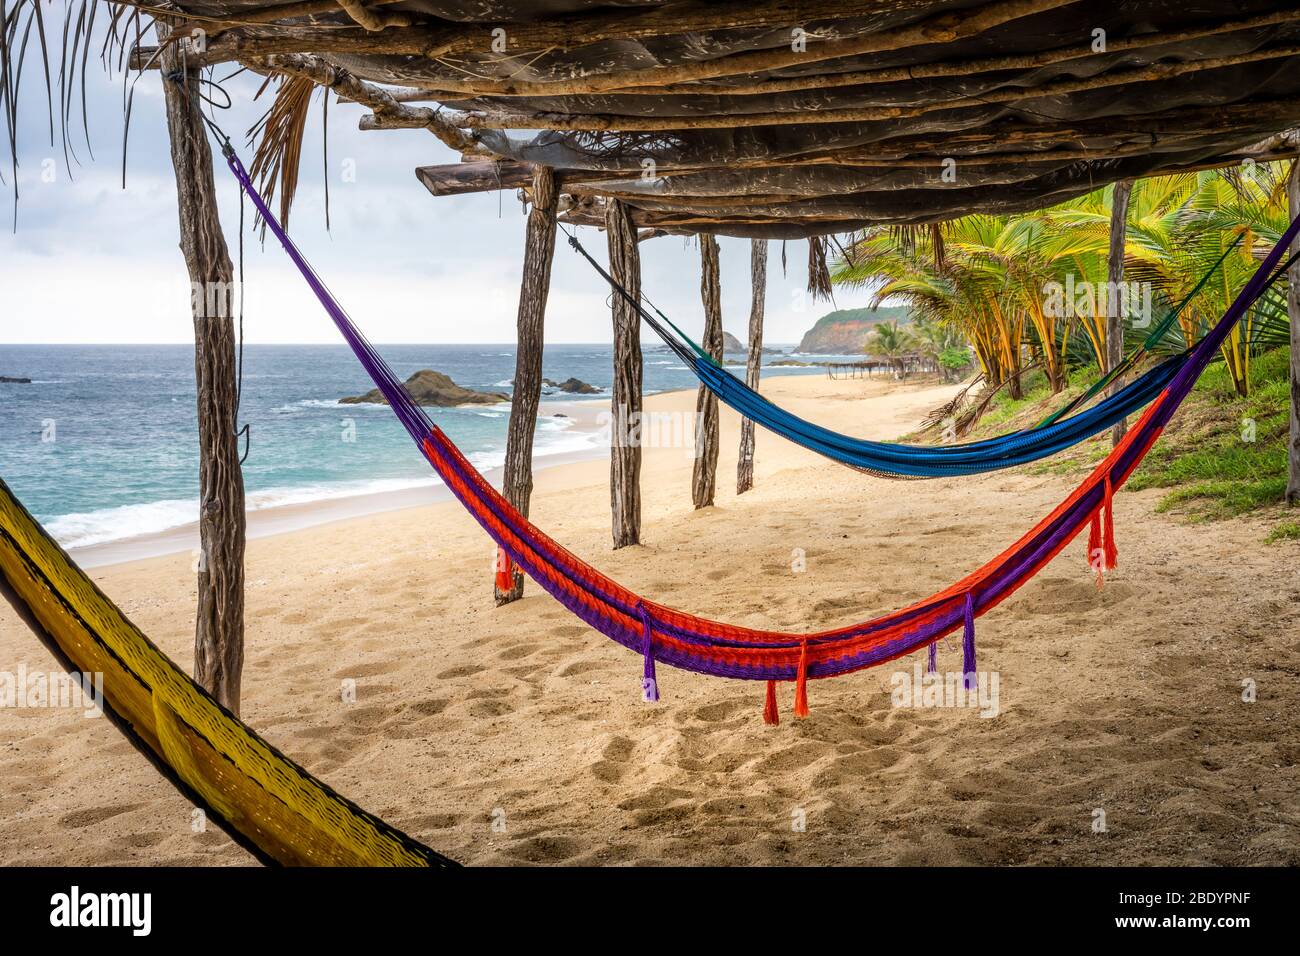 Hammocks on the Palma Sola beach on the Pacific coast of Mexico. Stock Photo